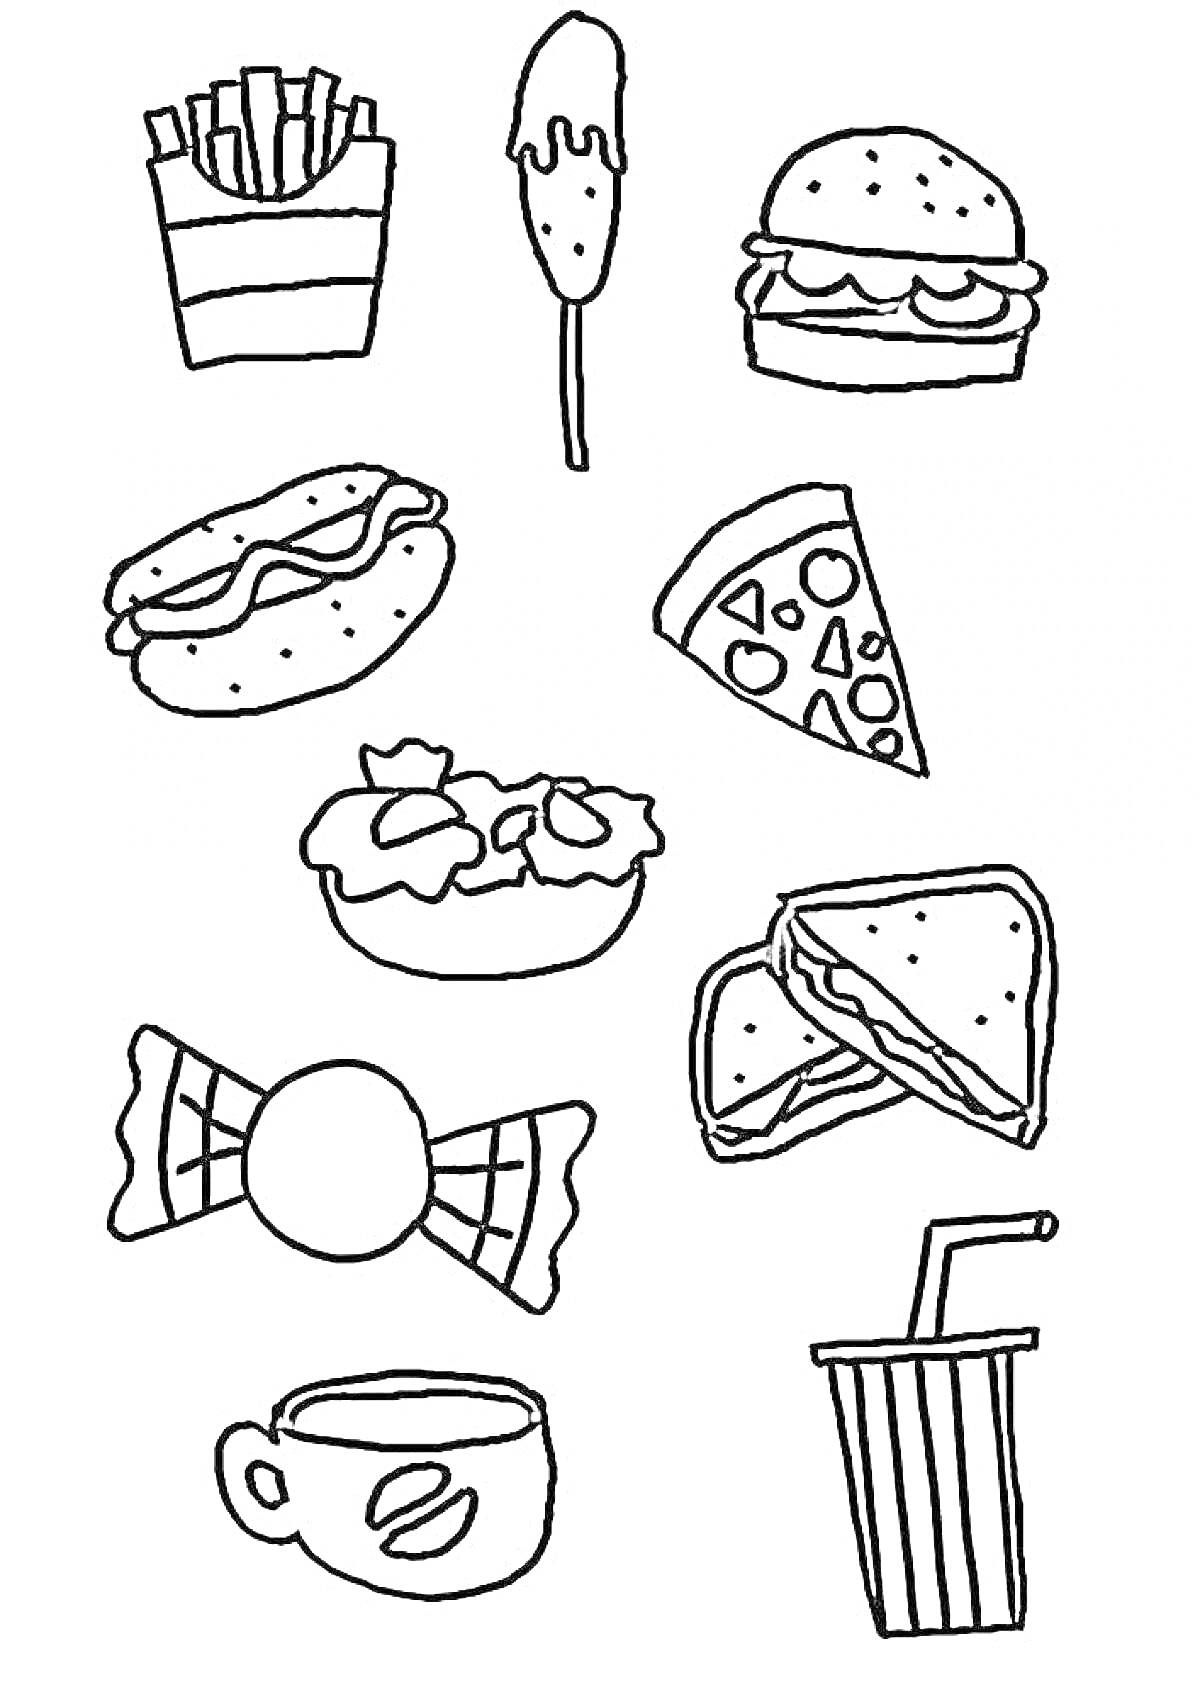  фастфуд-комбо с картофелем фри, мороженым на палочке, бургером, хот-догом, пиццей, салатом, сэндвичем, леденцом, чашкой кофе и стаканом газировки